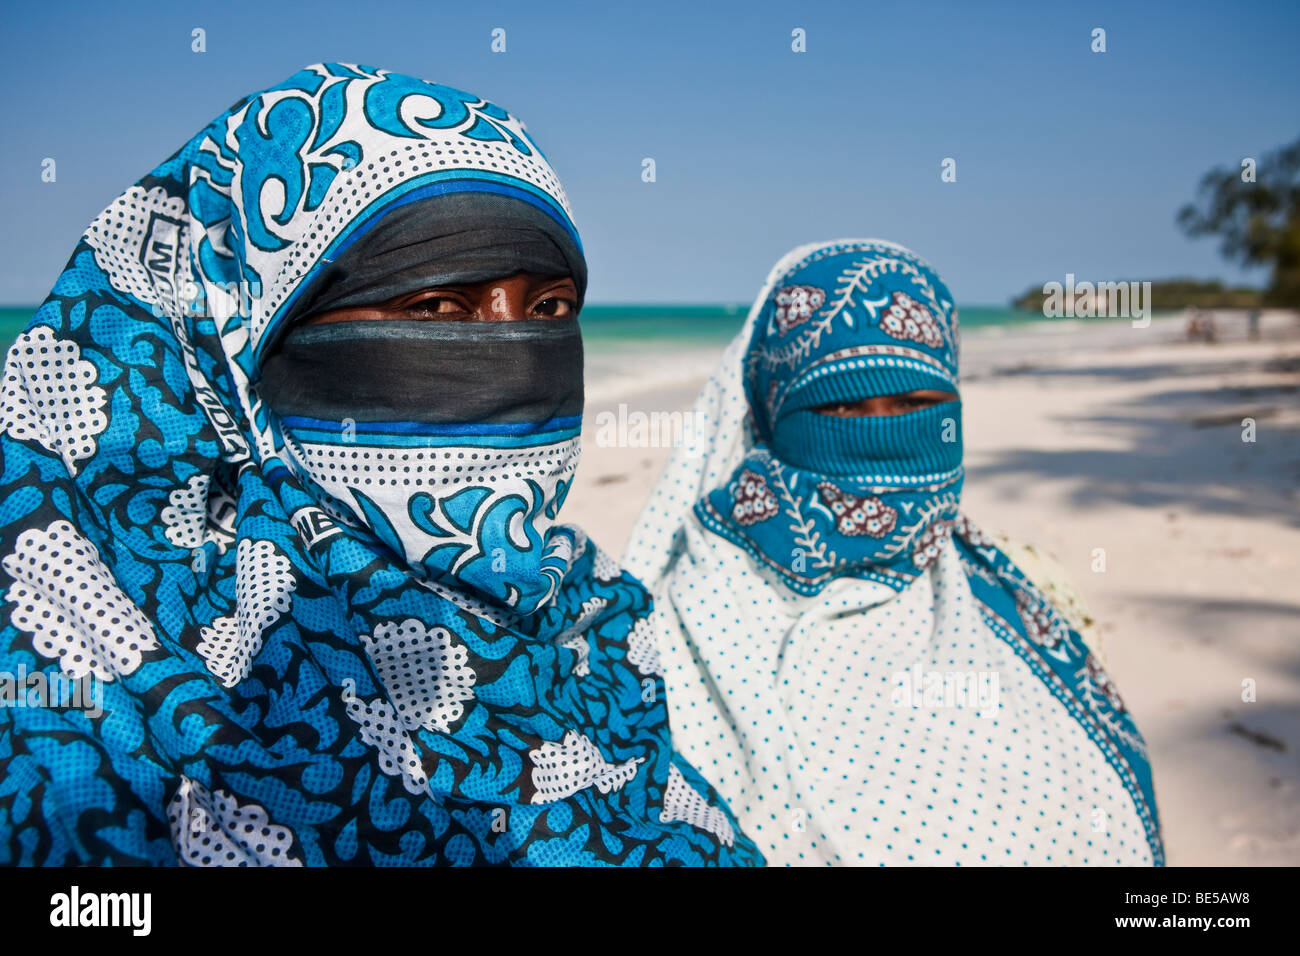 Veiled Muslim women on the beach in Zanzibar, Tanzania, Africa Stock Photo